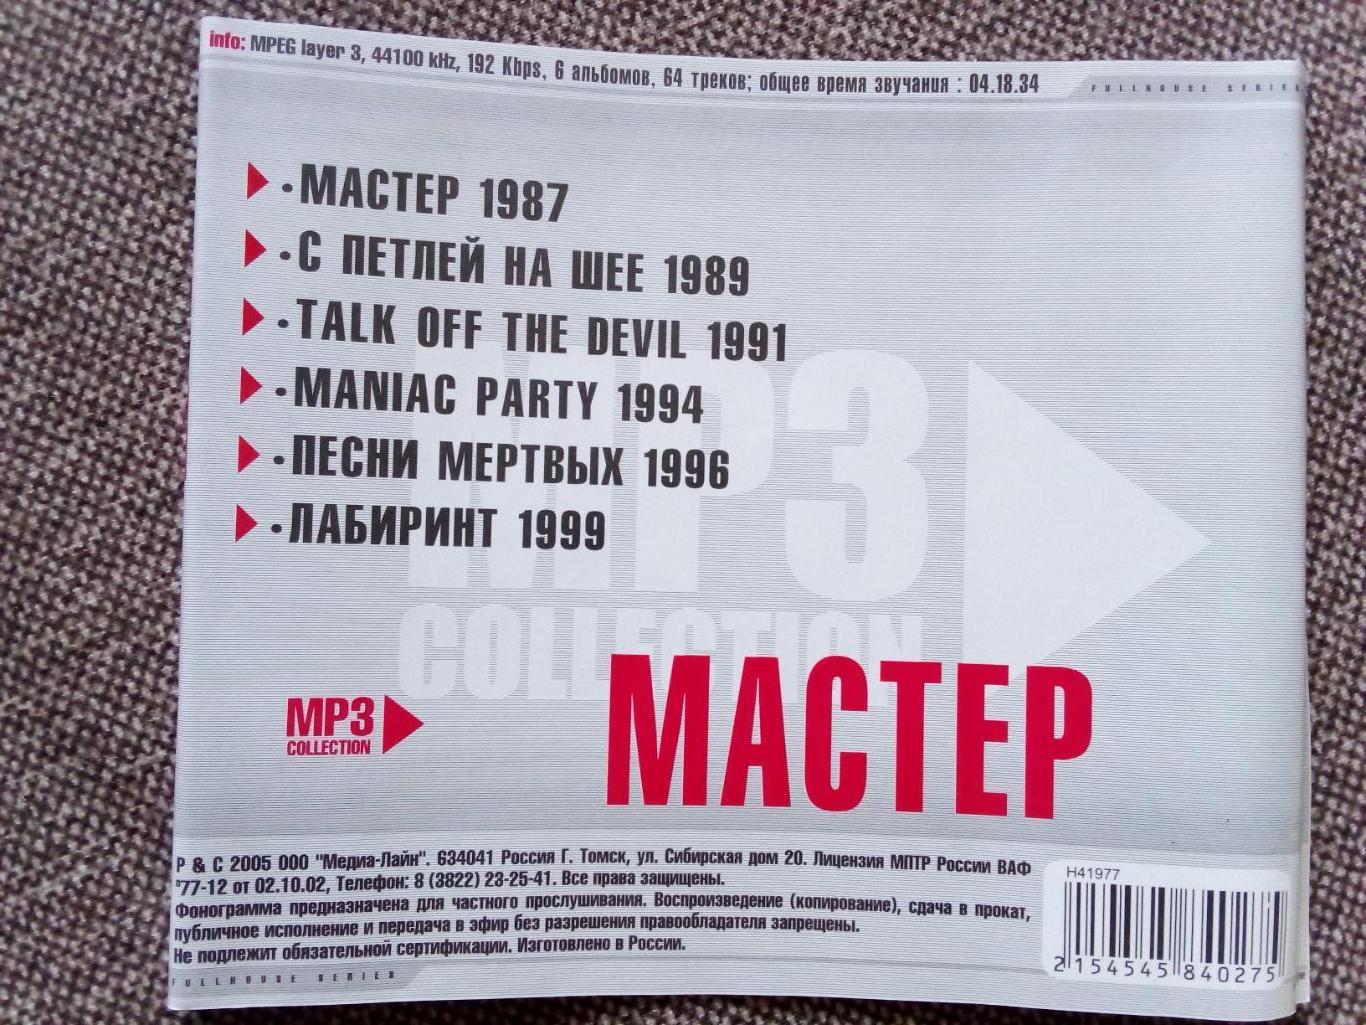 CD MP - 3 диск : группа Мастер 1987 - 1999 гг. (6 альбомов) лицензия (Метал) 7